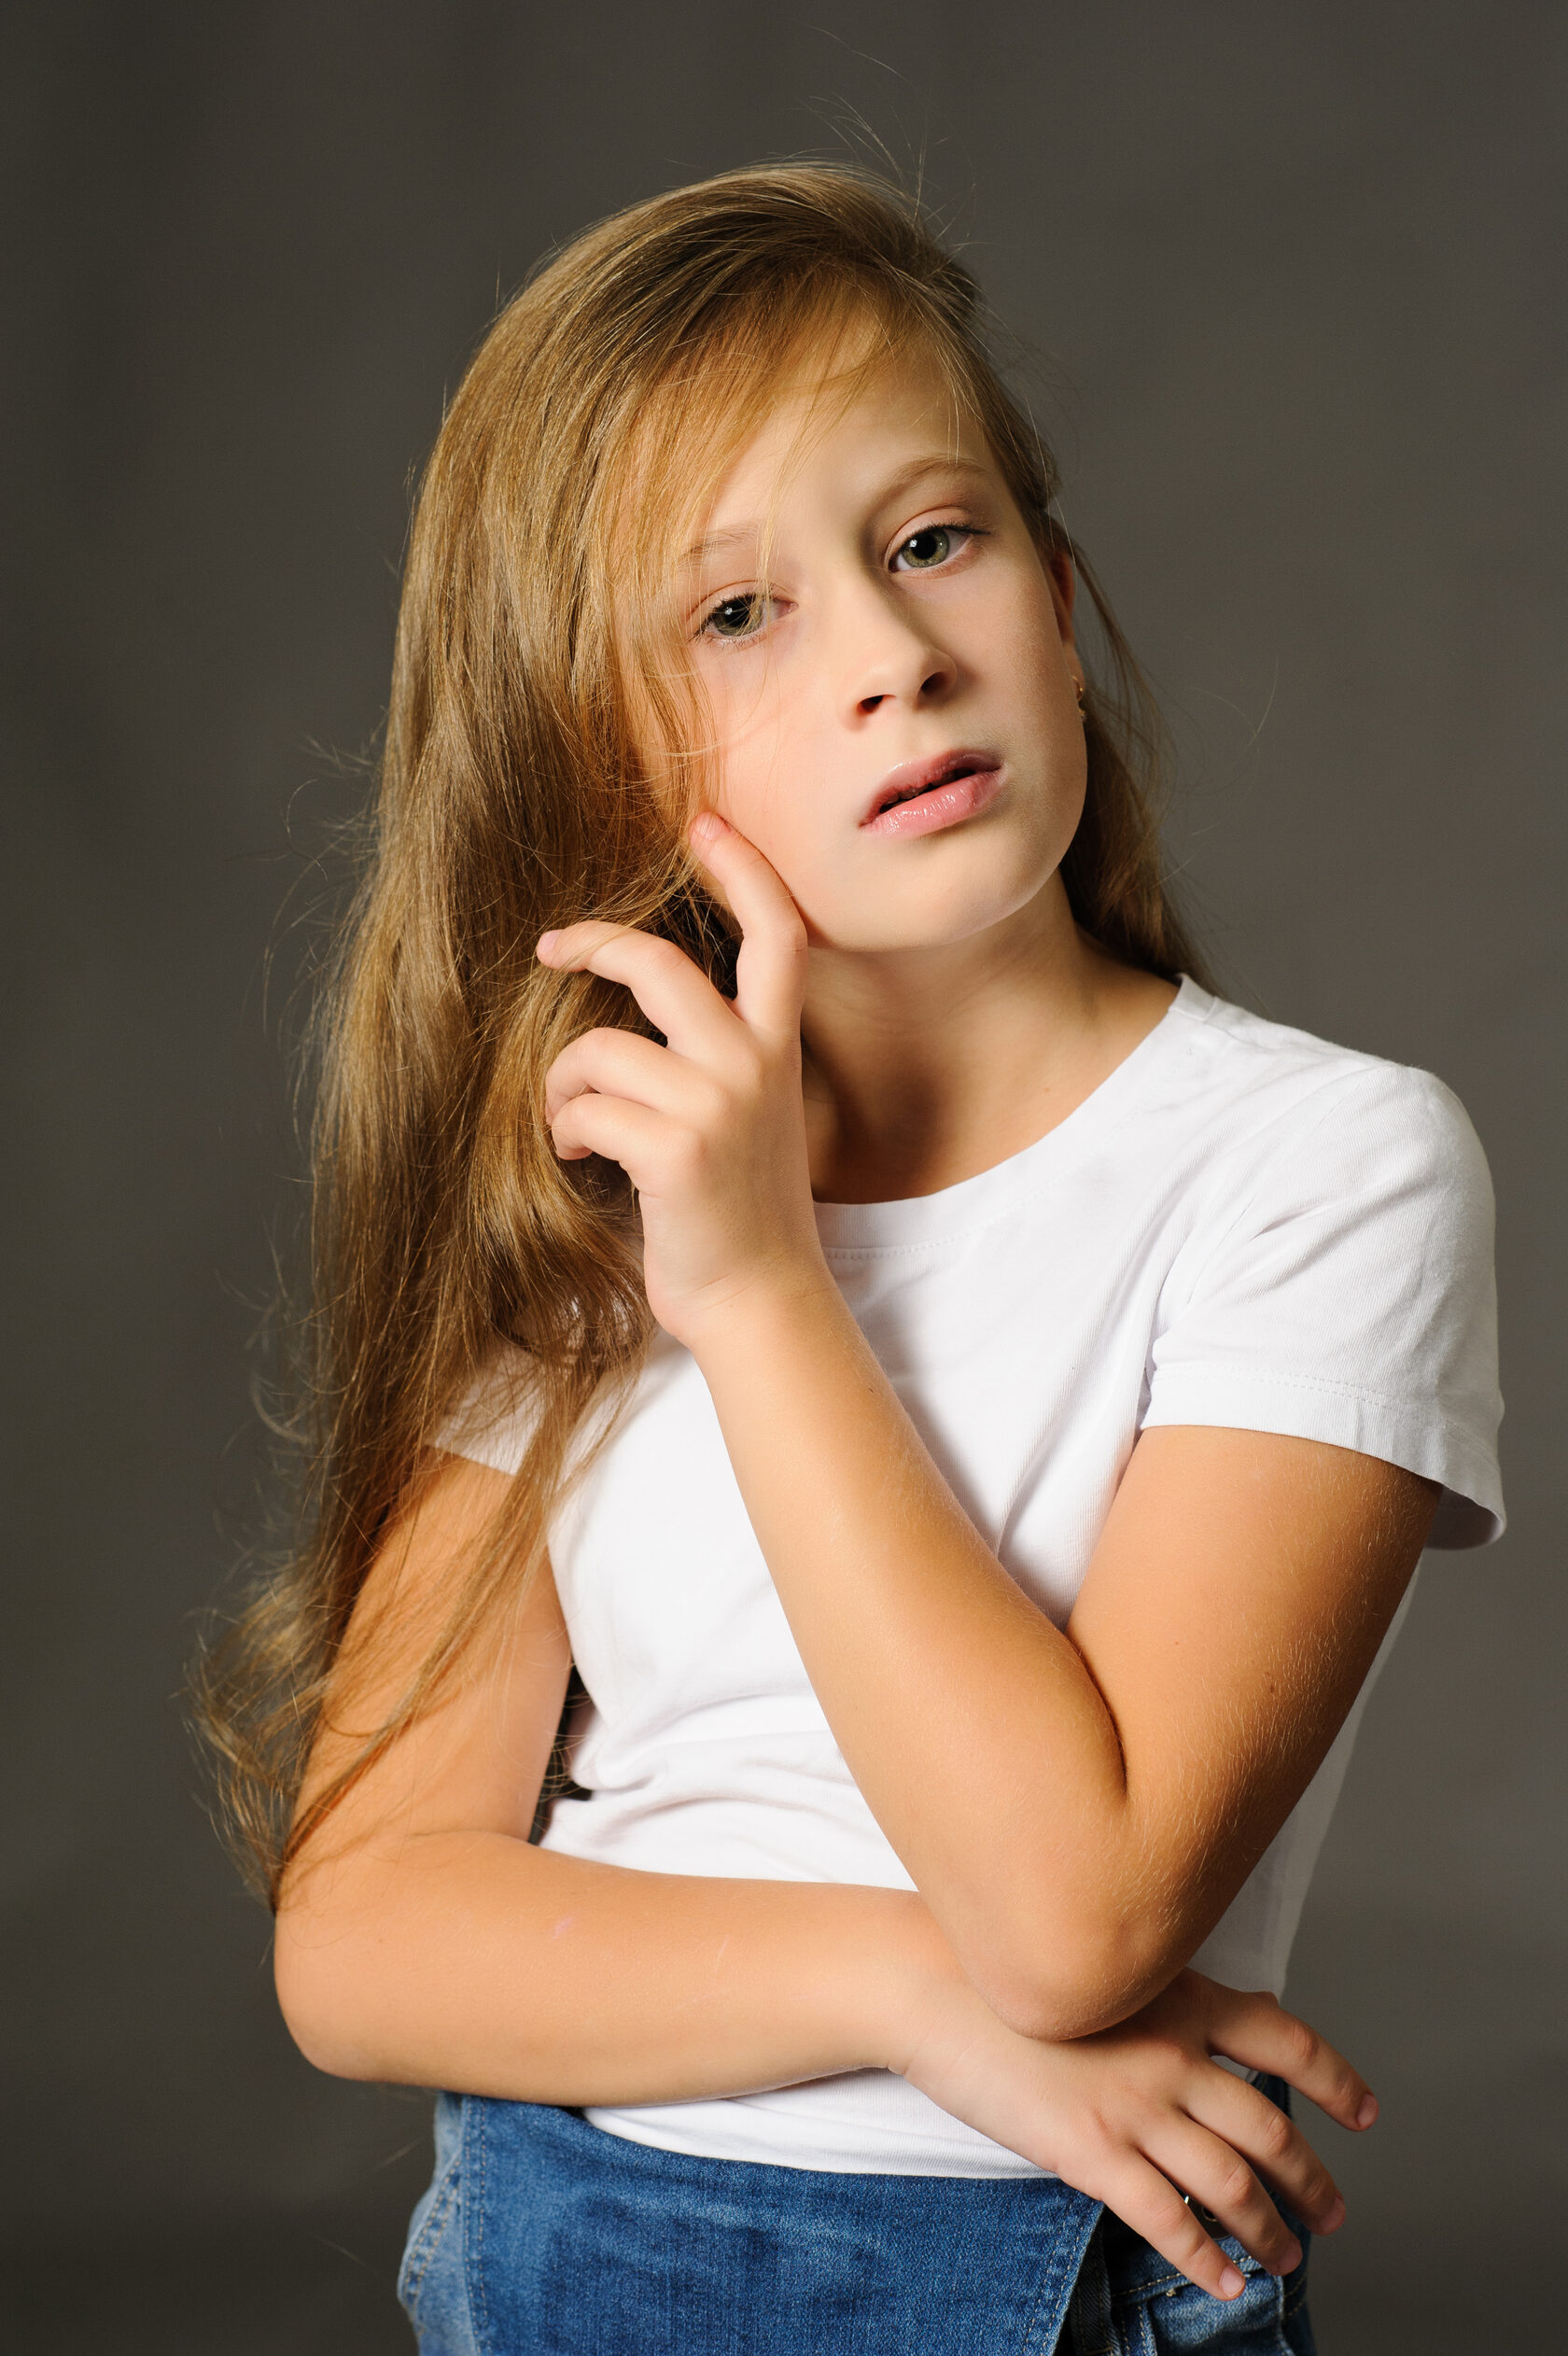 Фото девочки 12 лет модели фото